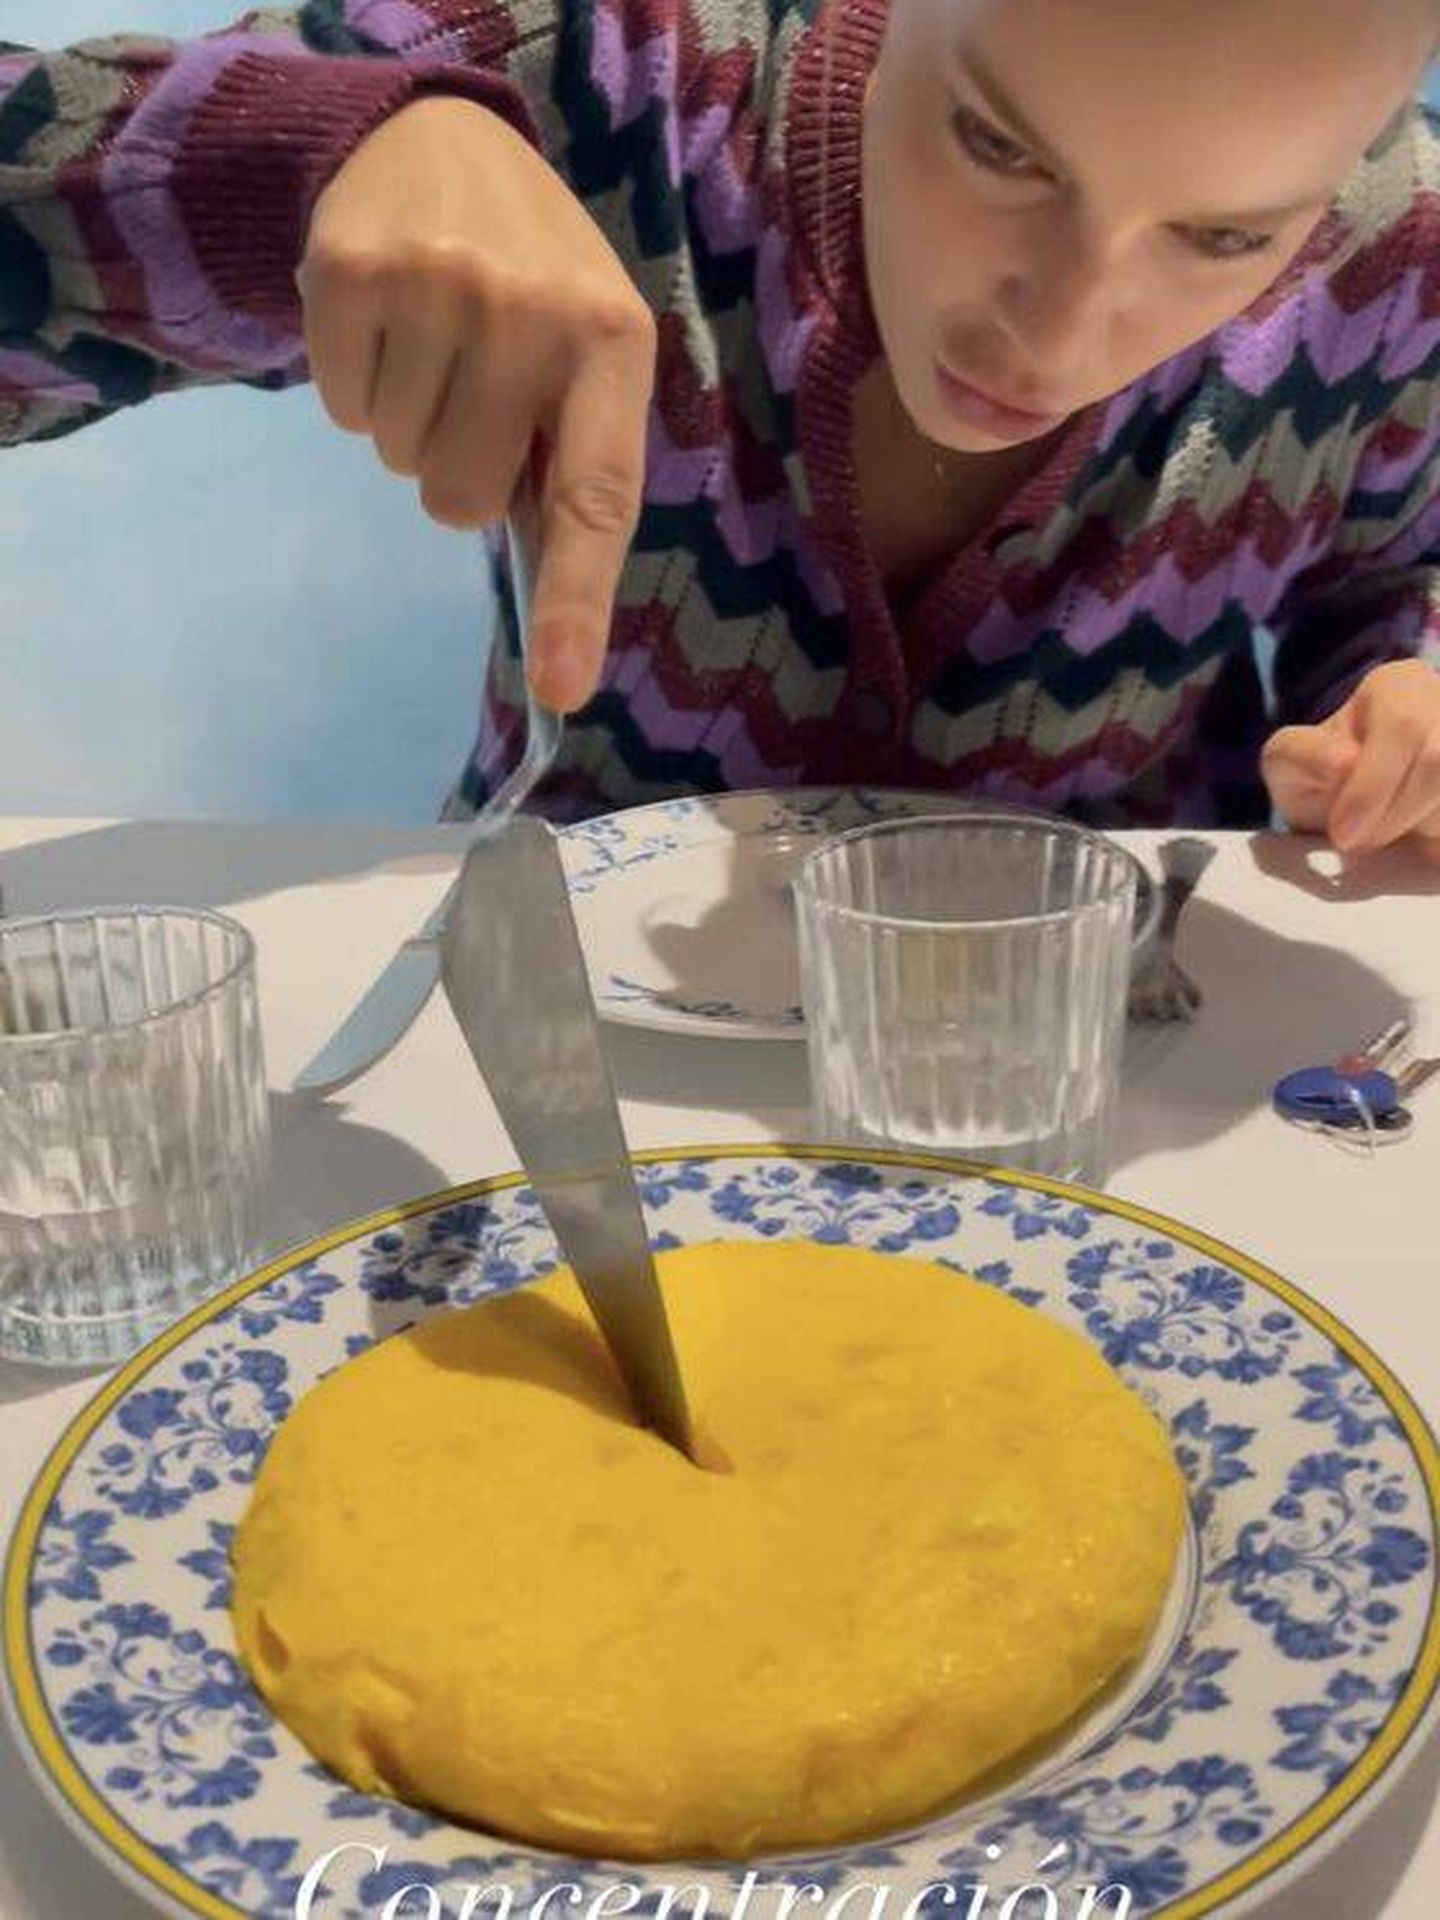  Ale Onieva y su tortilla. (Instagram/@ionieva)